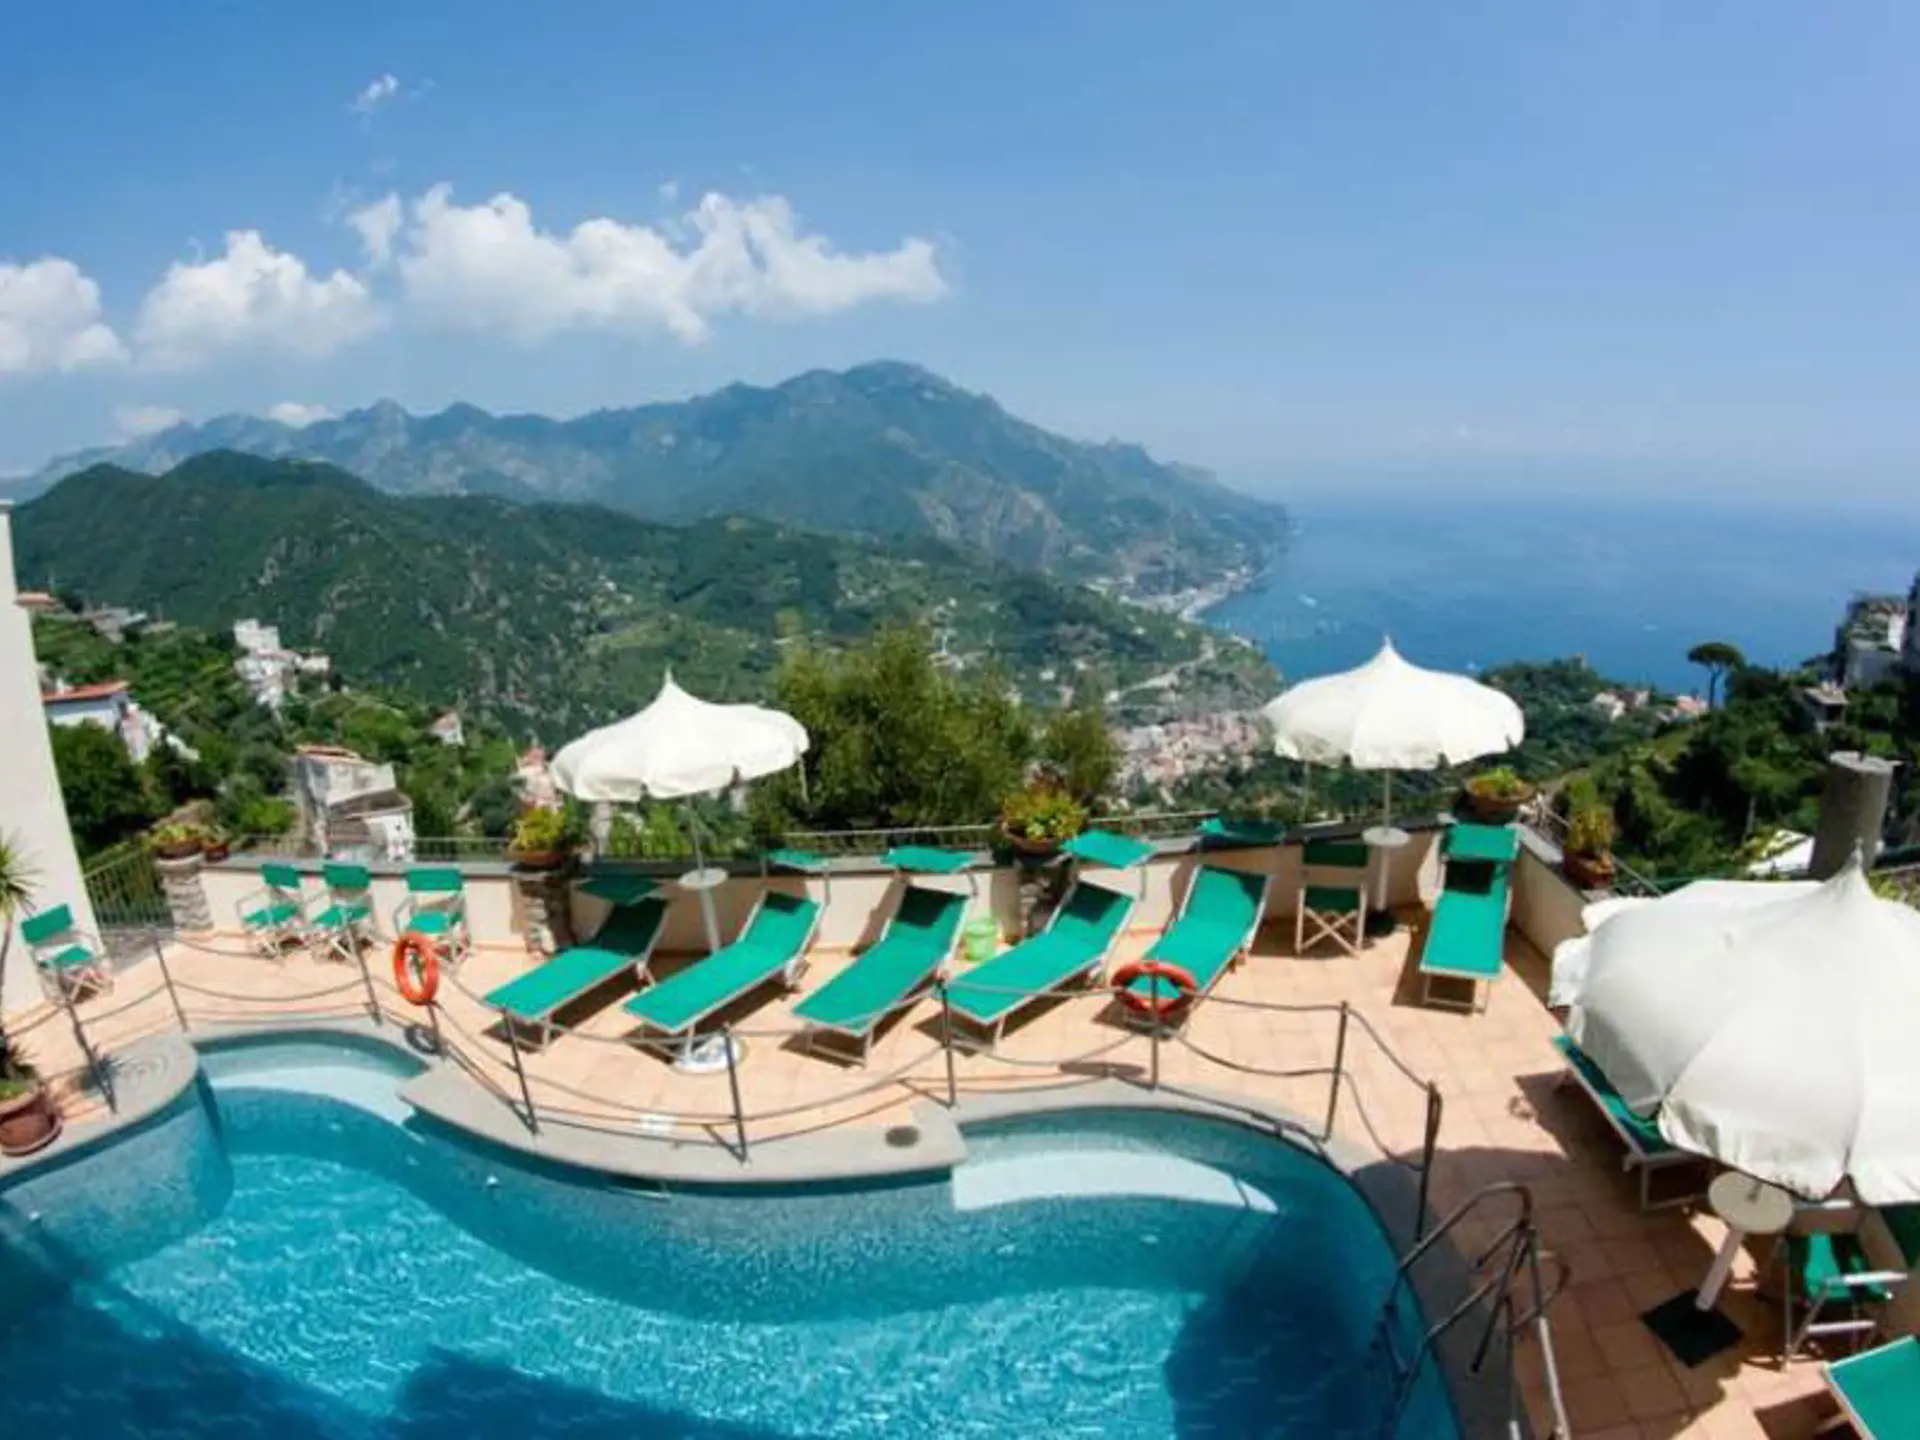 Utsikten från poolområdet på Hotel Bonadies är fantastisk - även på bilder av låg kvalitet